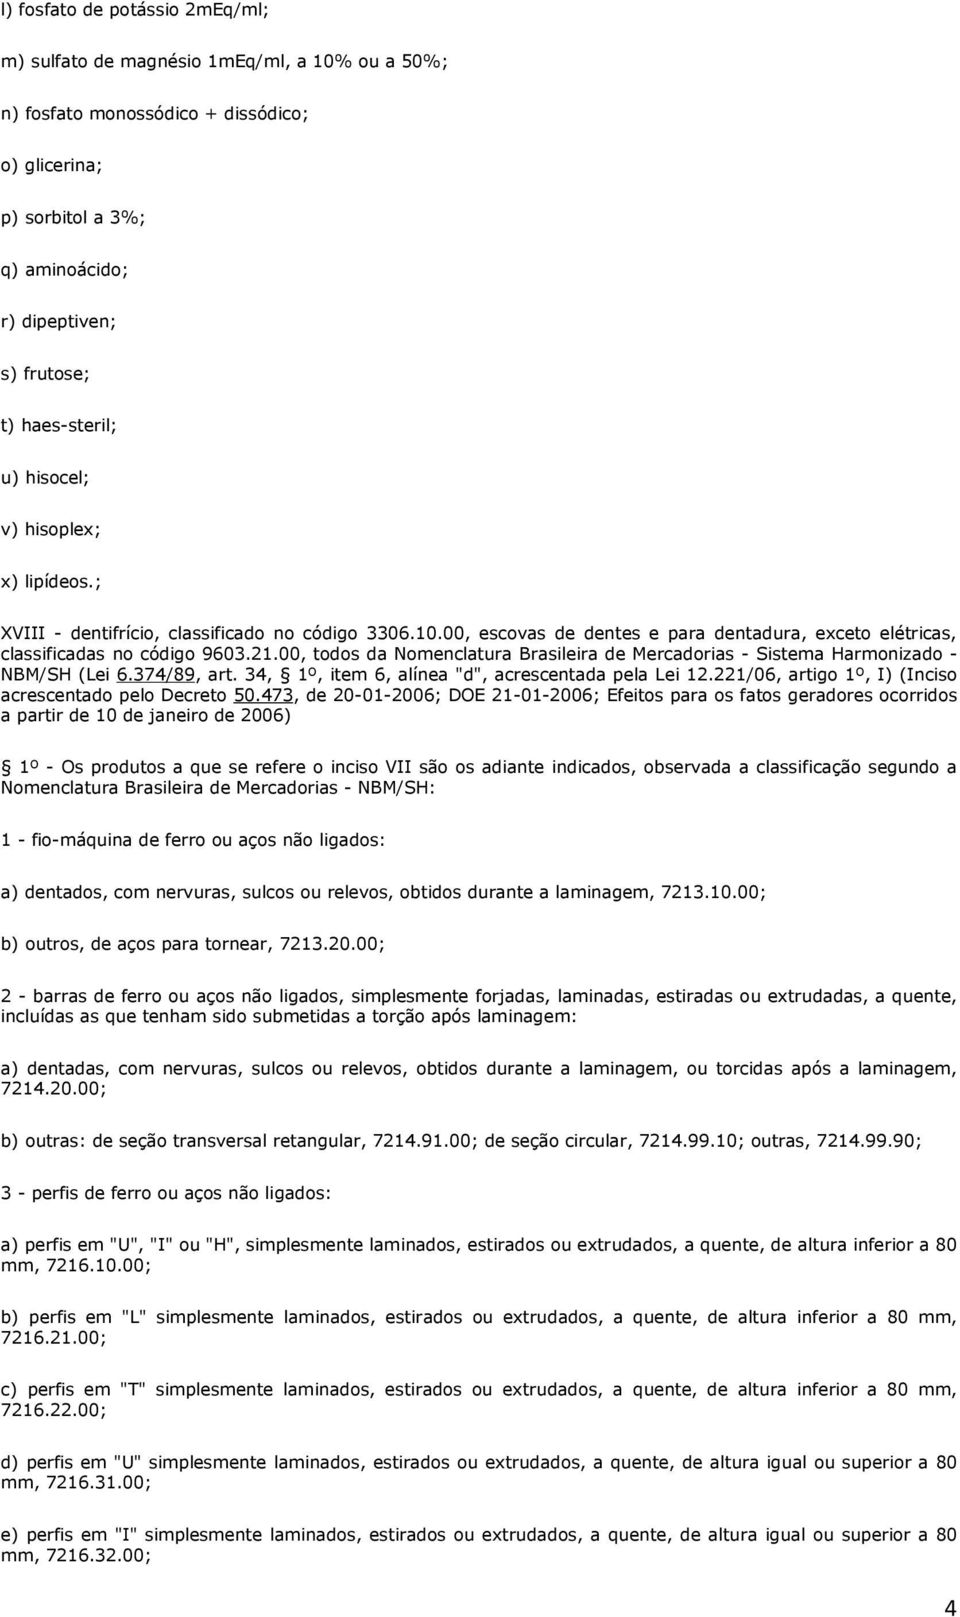 00, todos da Nomenclatura Brasileira de Mercadorias - Sistema Harmonizado - NBM/SH (Lei 6.374/89, art. 34, 1º, item 6, alínea "d", acrescentada pela Lei 12.